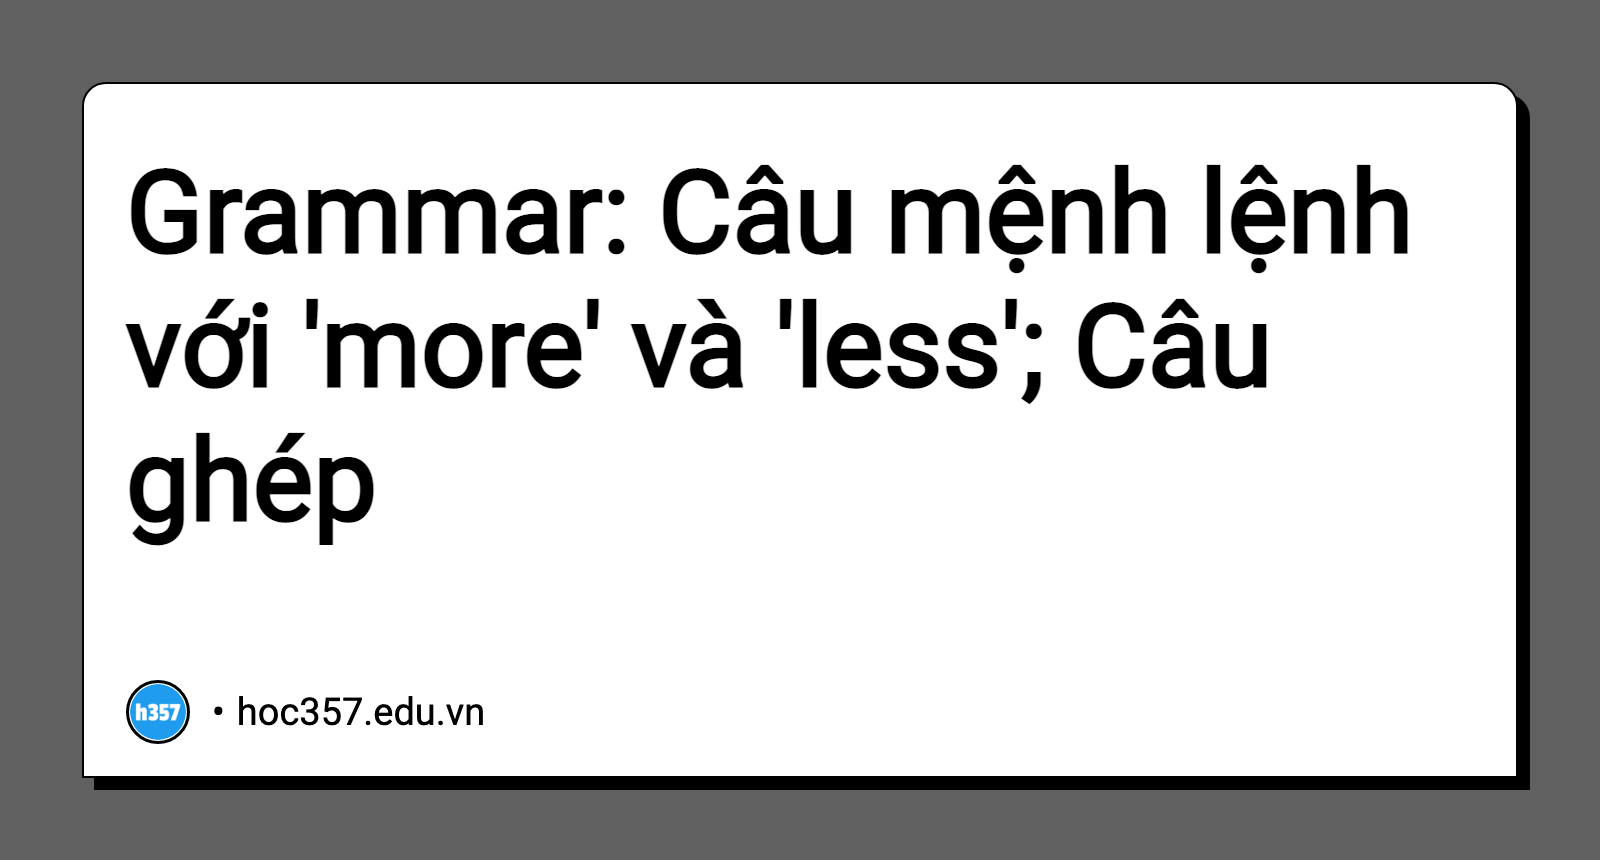 Hình minh họa Grammar: Câu mệnh lệnh với 'more' và 'less'; Câu ghép